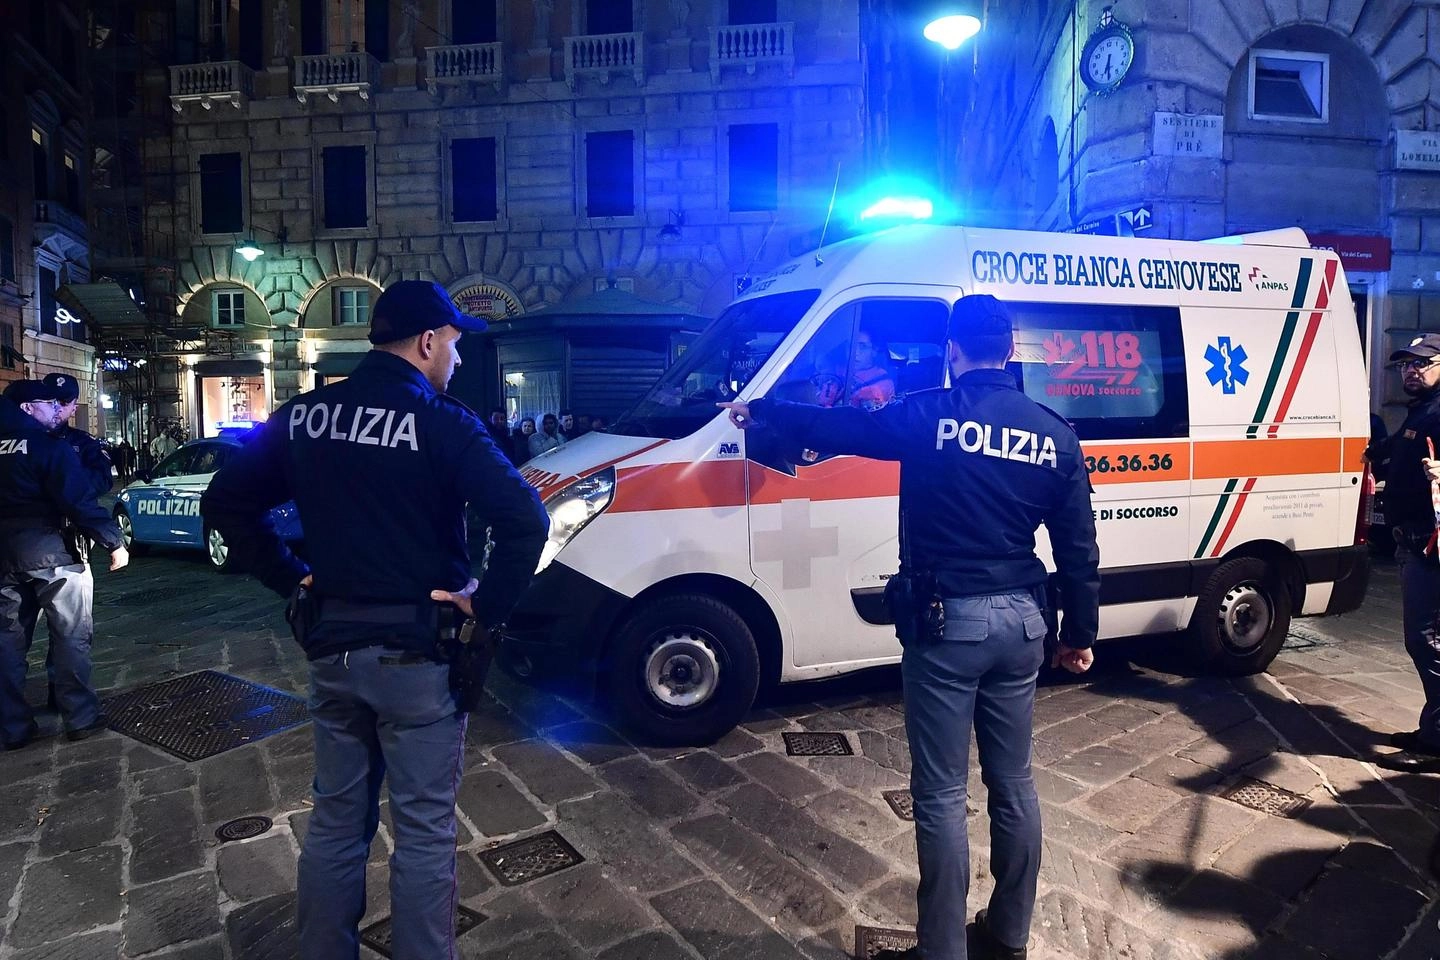 Ambulanza nel centro storico di Genova, dove una bambina è precipitata dal balcone (Ansa)